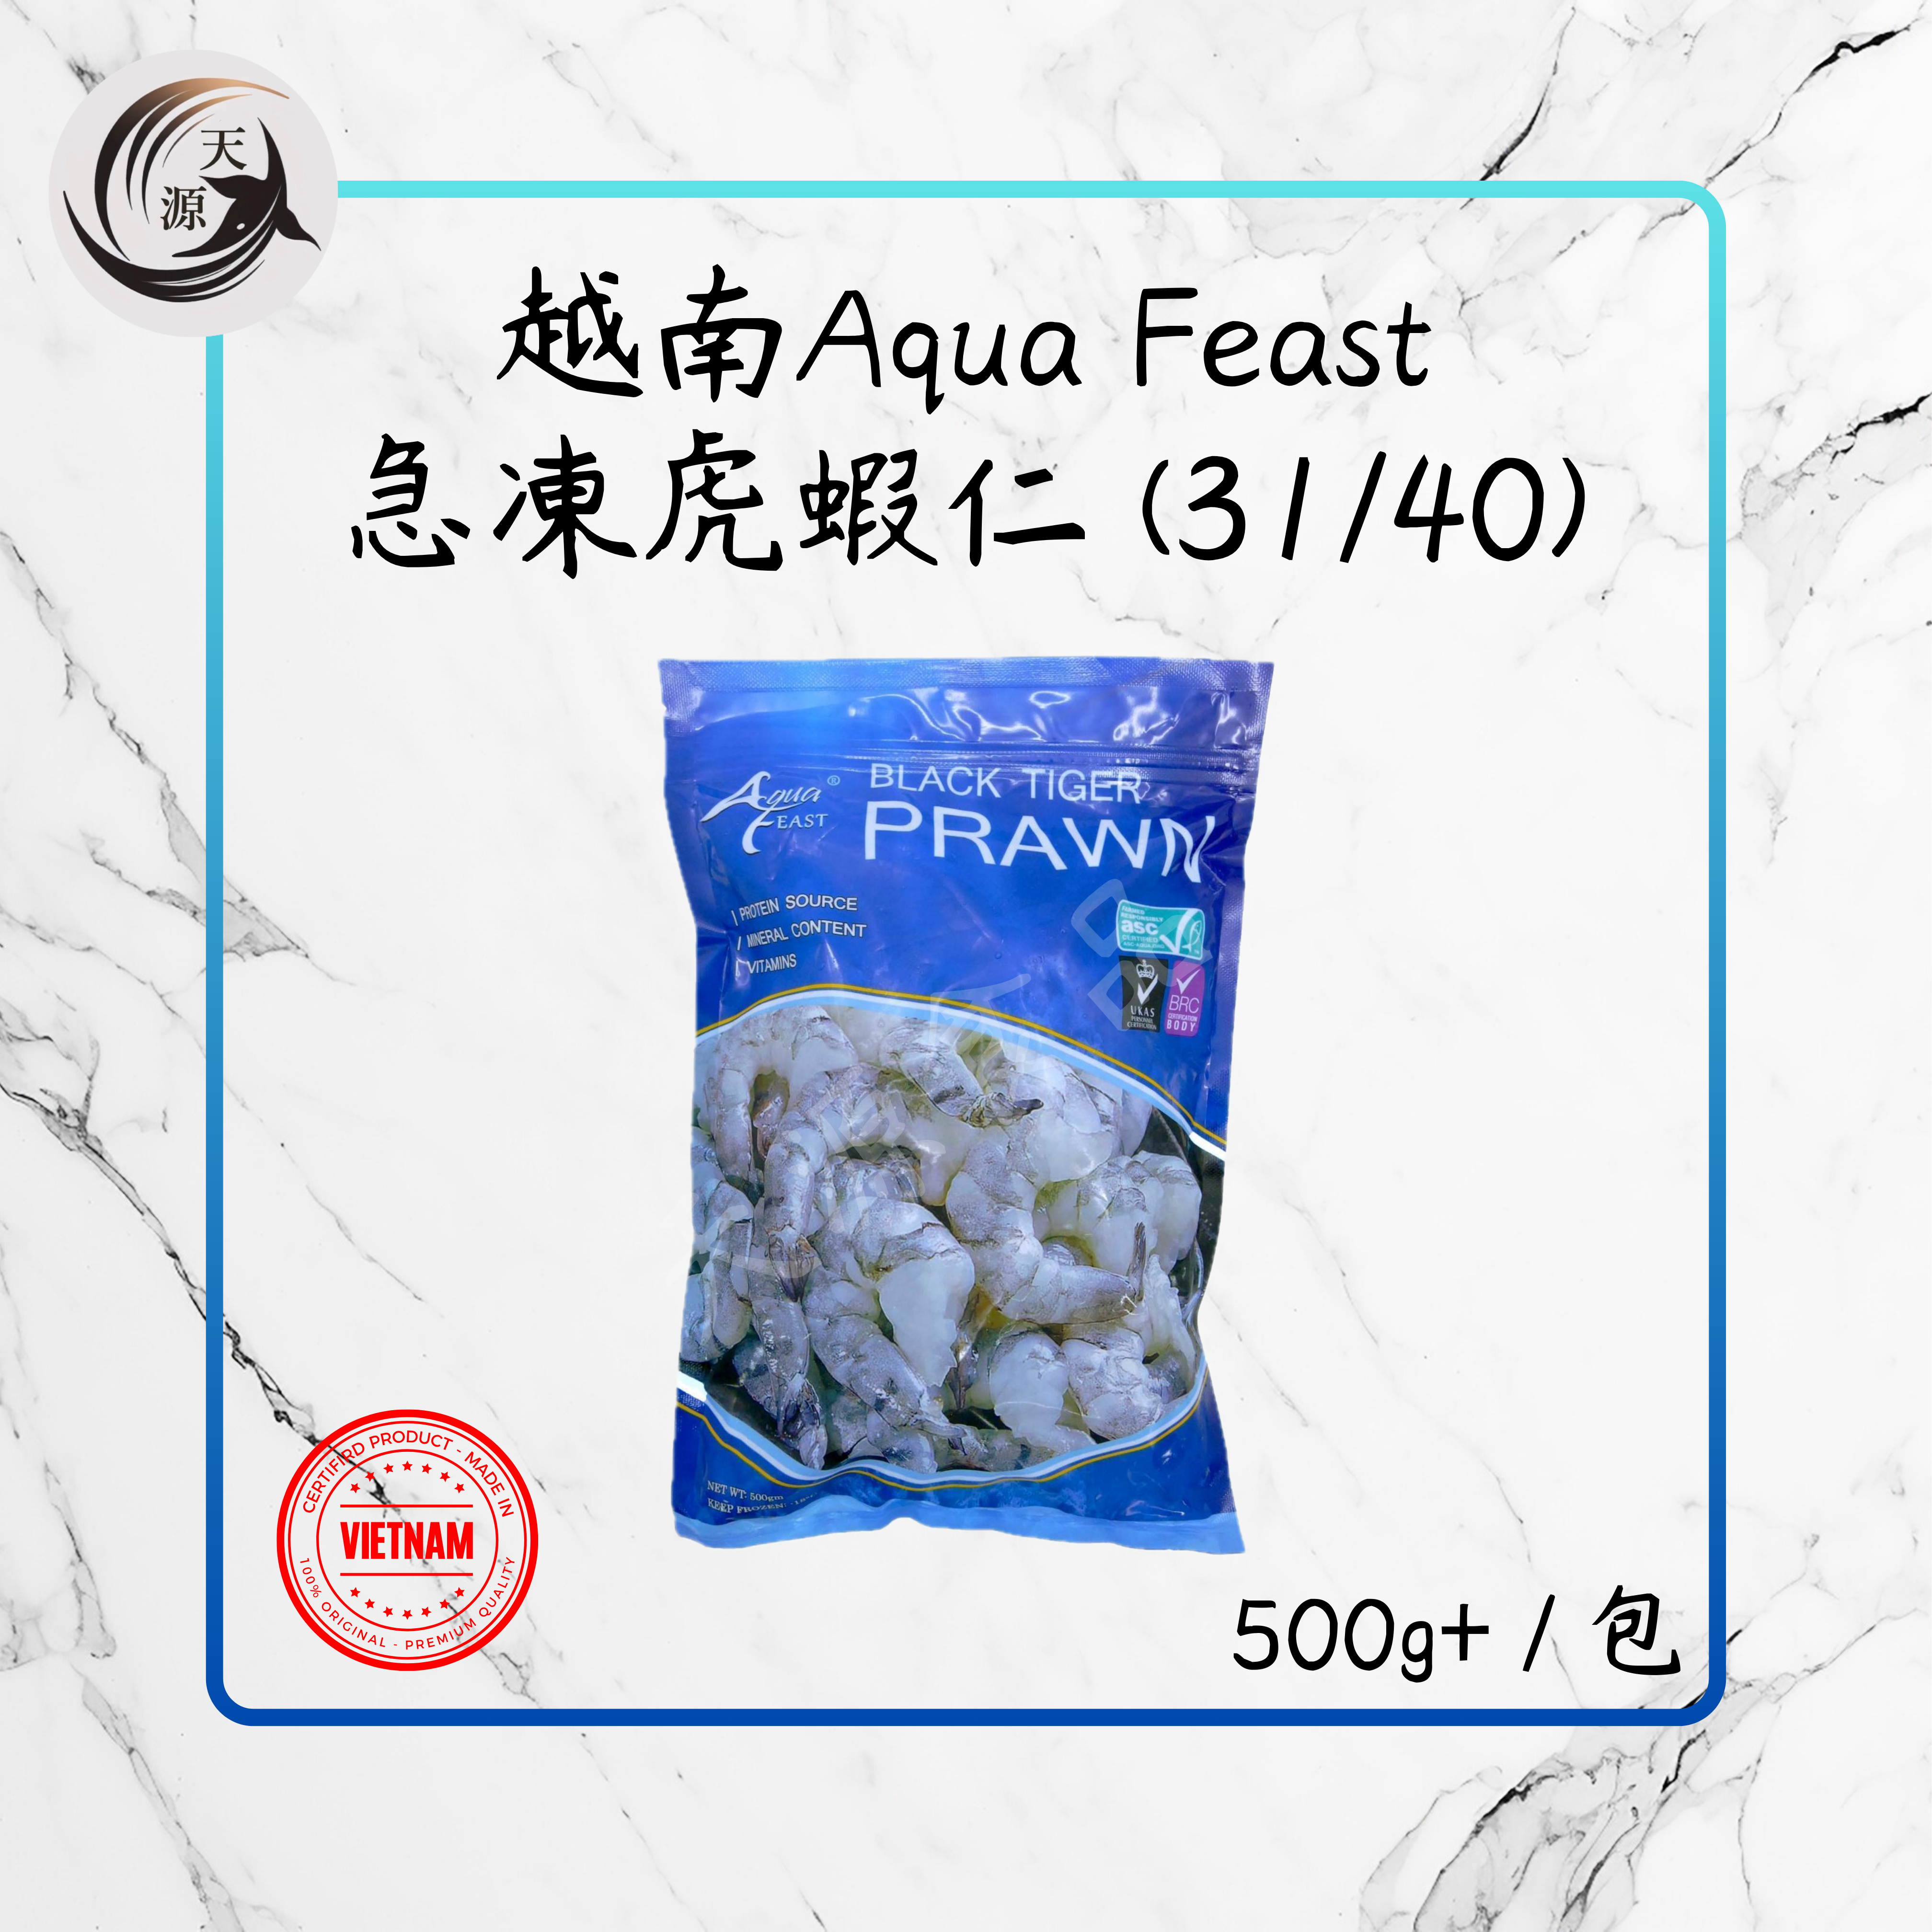 越南Aqua Feast急凍虎蝦仁 (31/40) 500g